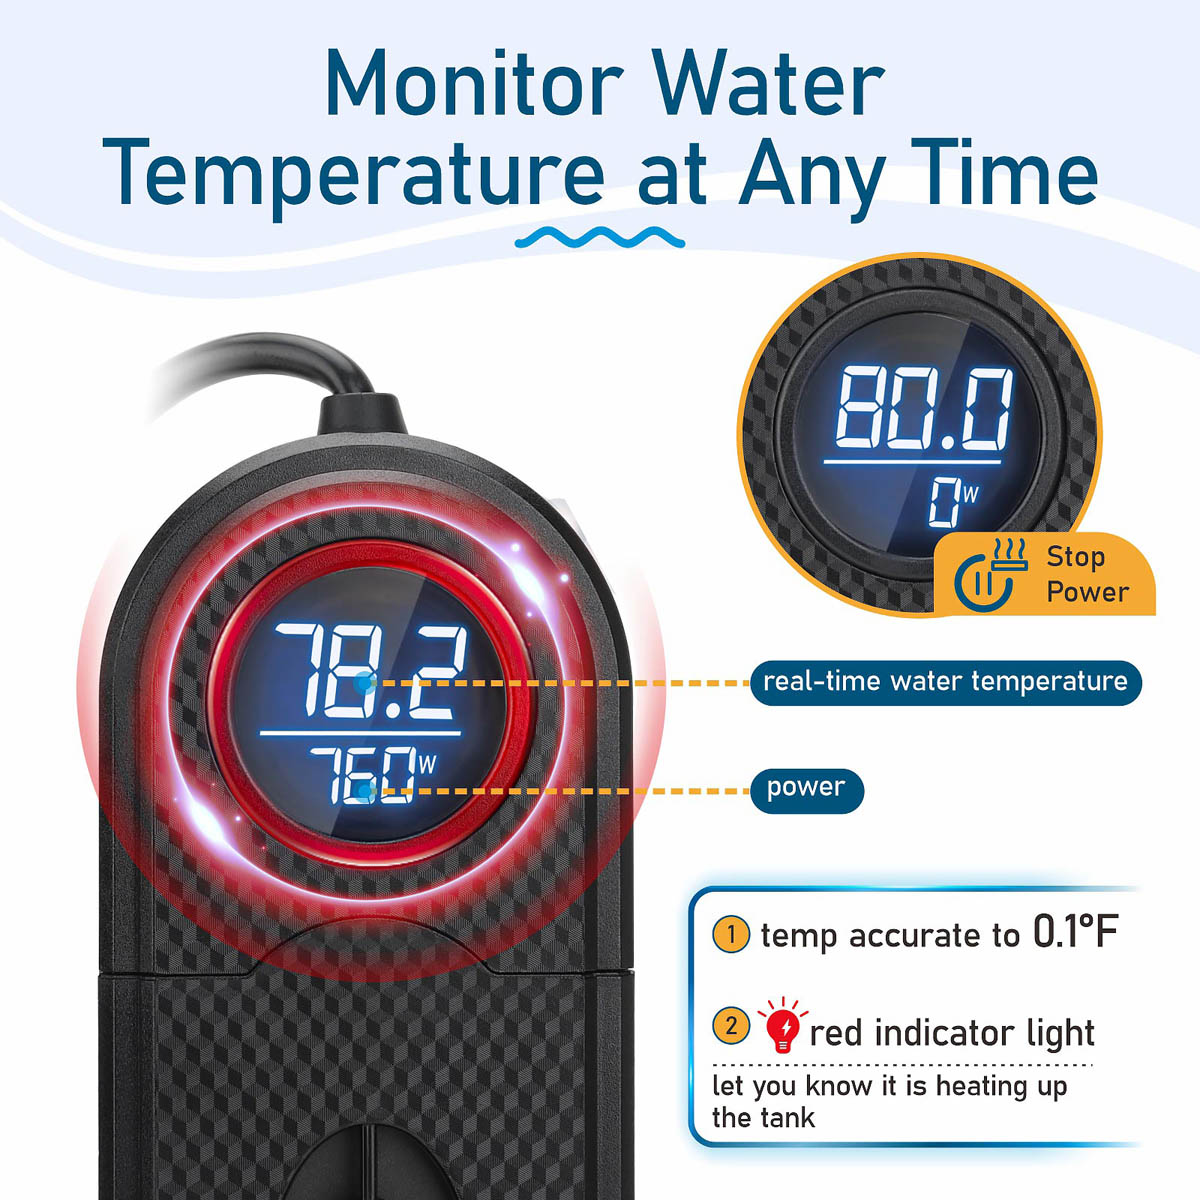 hygger Calentador marino de acuario de titanio de 500 W para agua salada y  agua dulce, calentador sumergible digital con termostato IC externo y